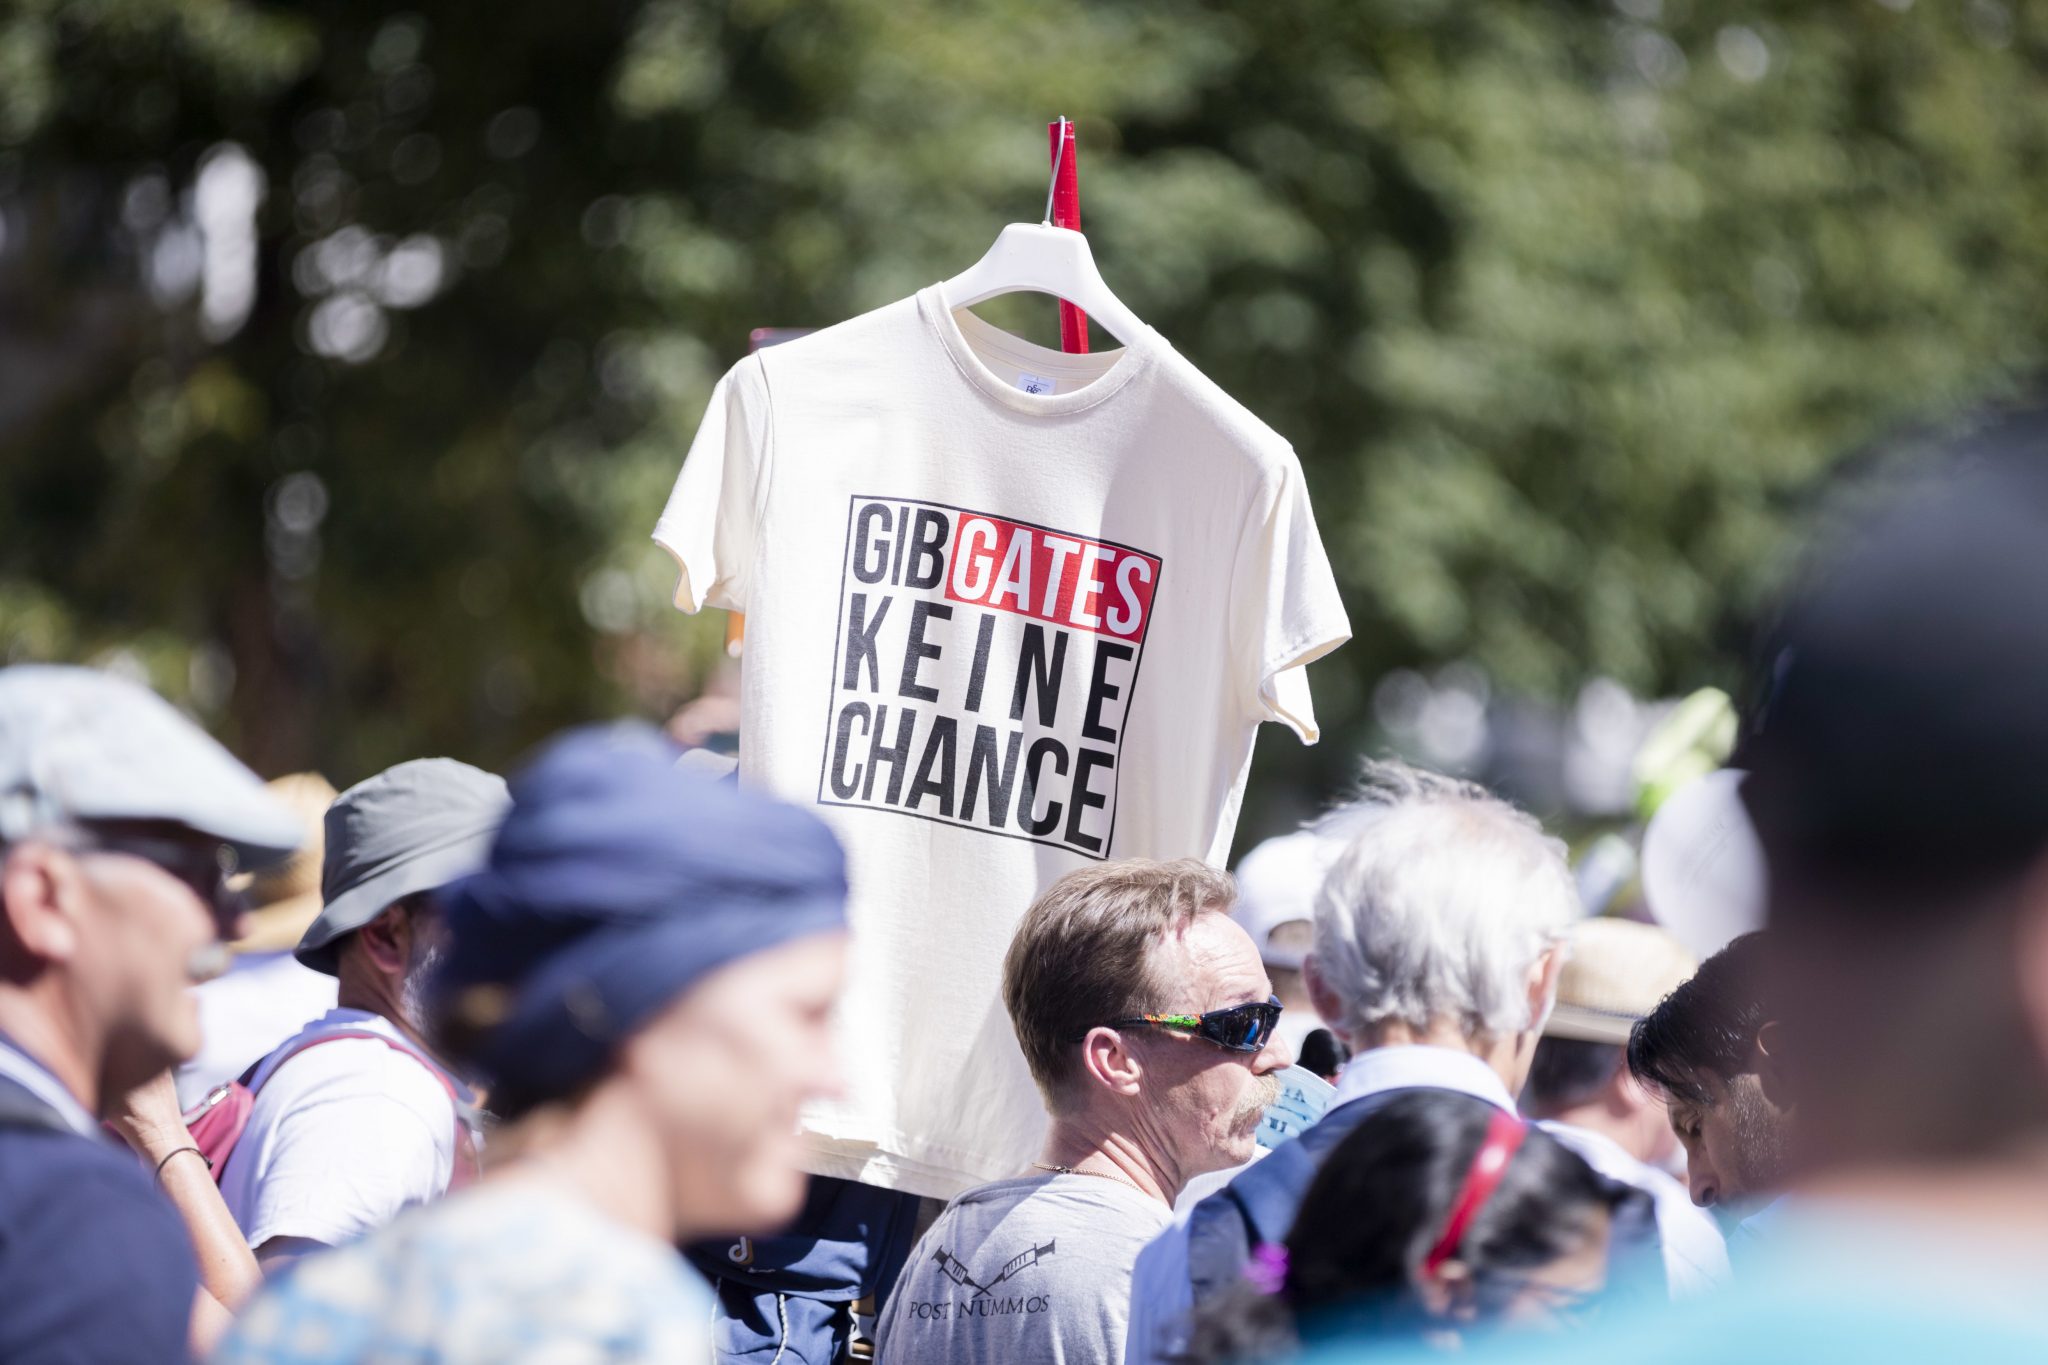 Demonstration gegen Corona-Maßnahmen in Berlin: „Gib Gates keine Chance“ Foto: picture